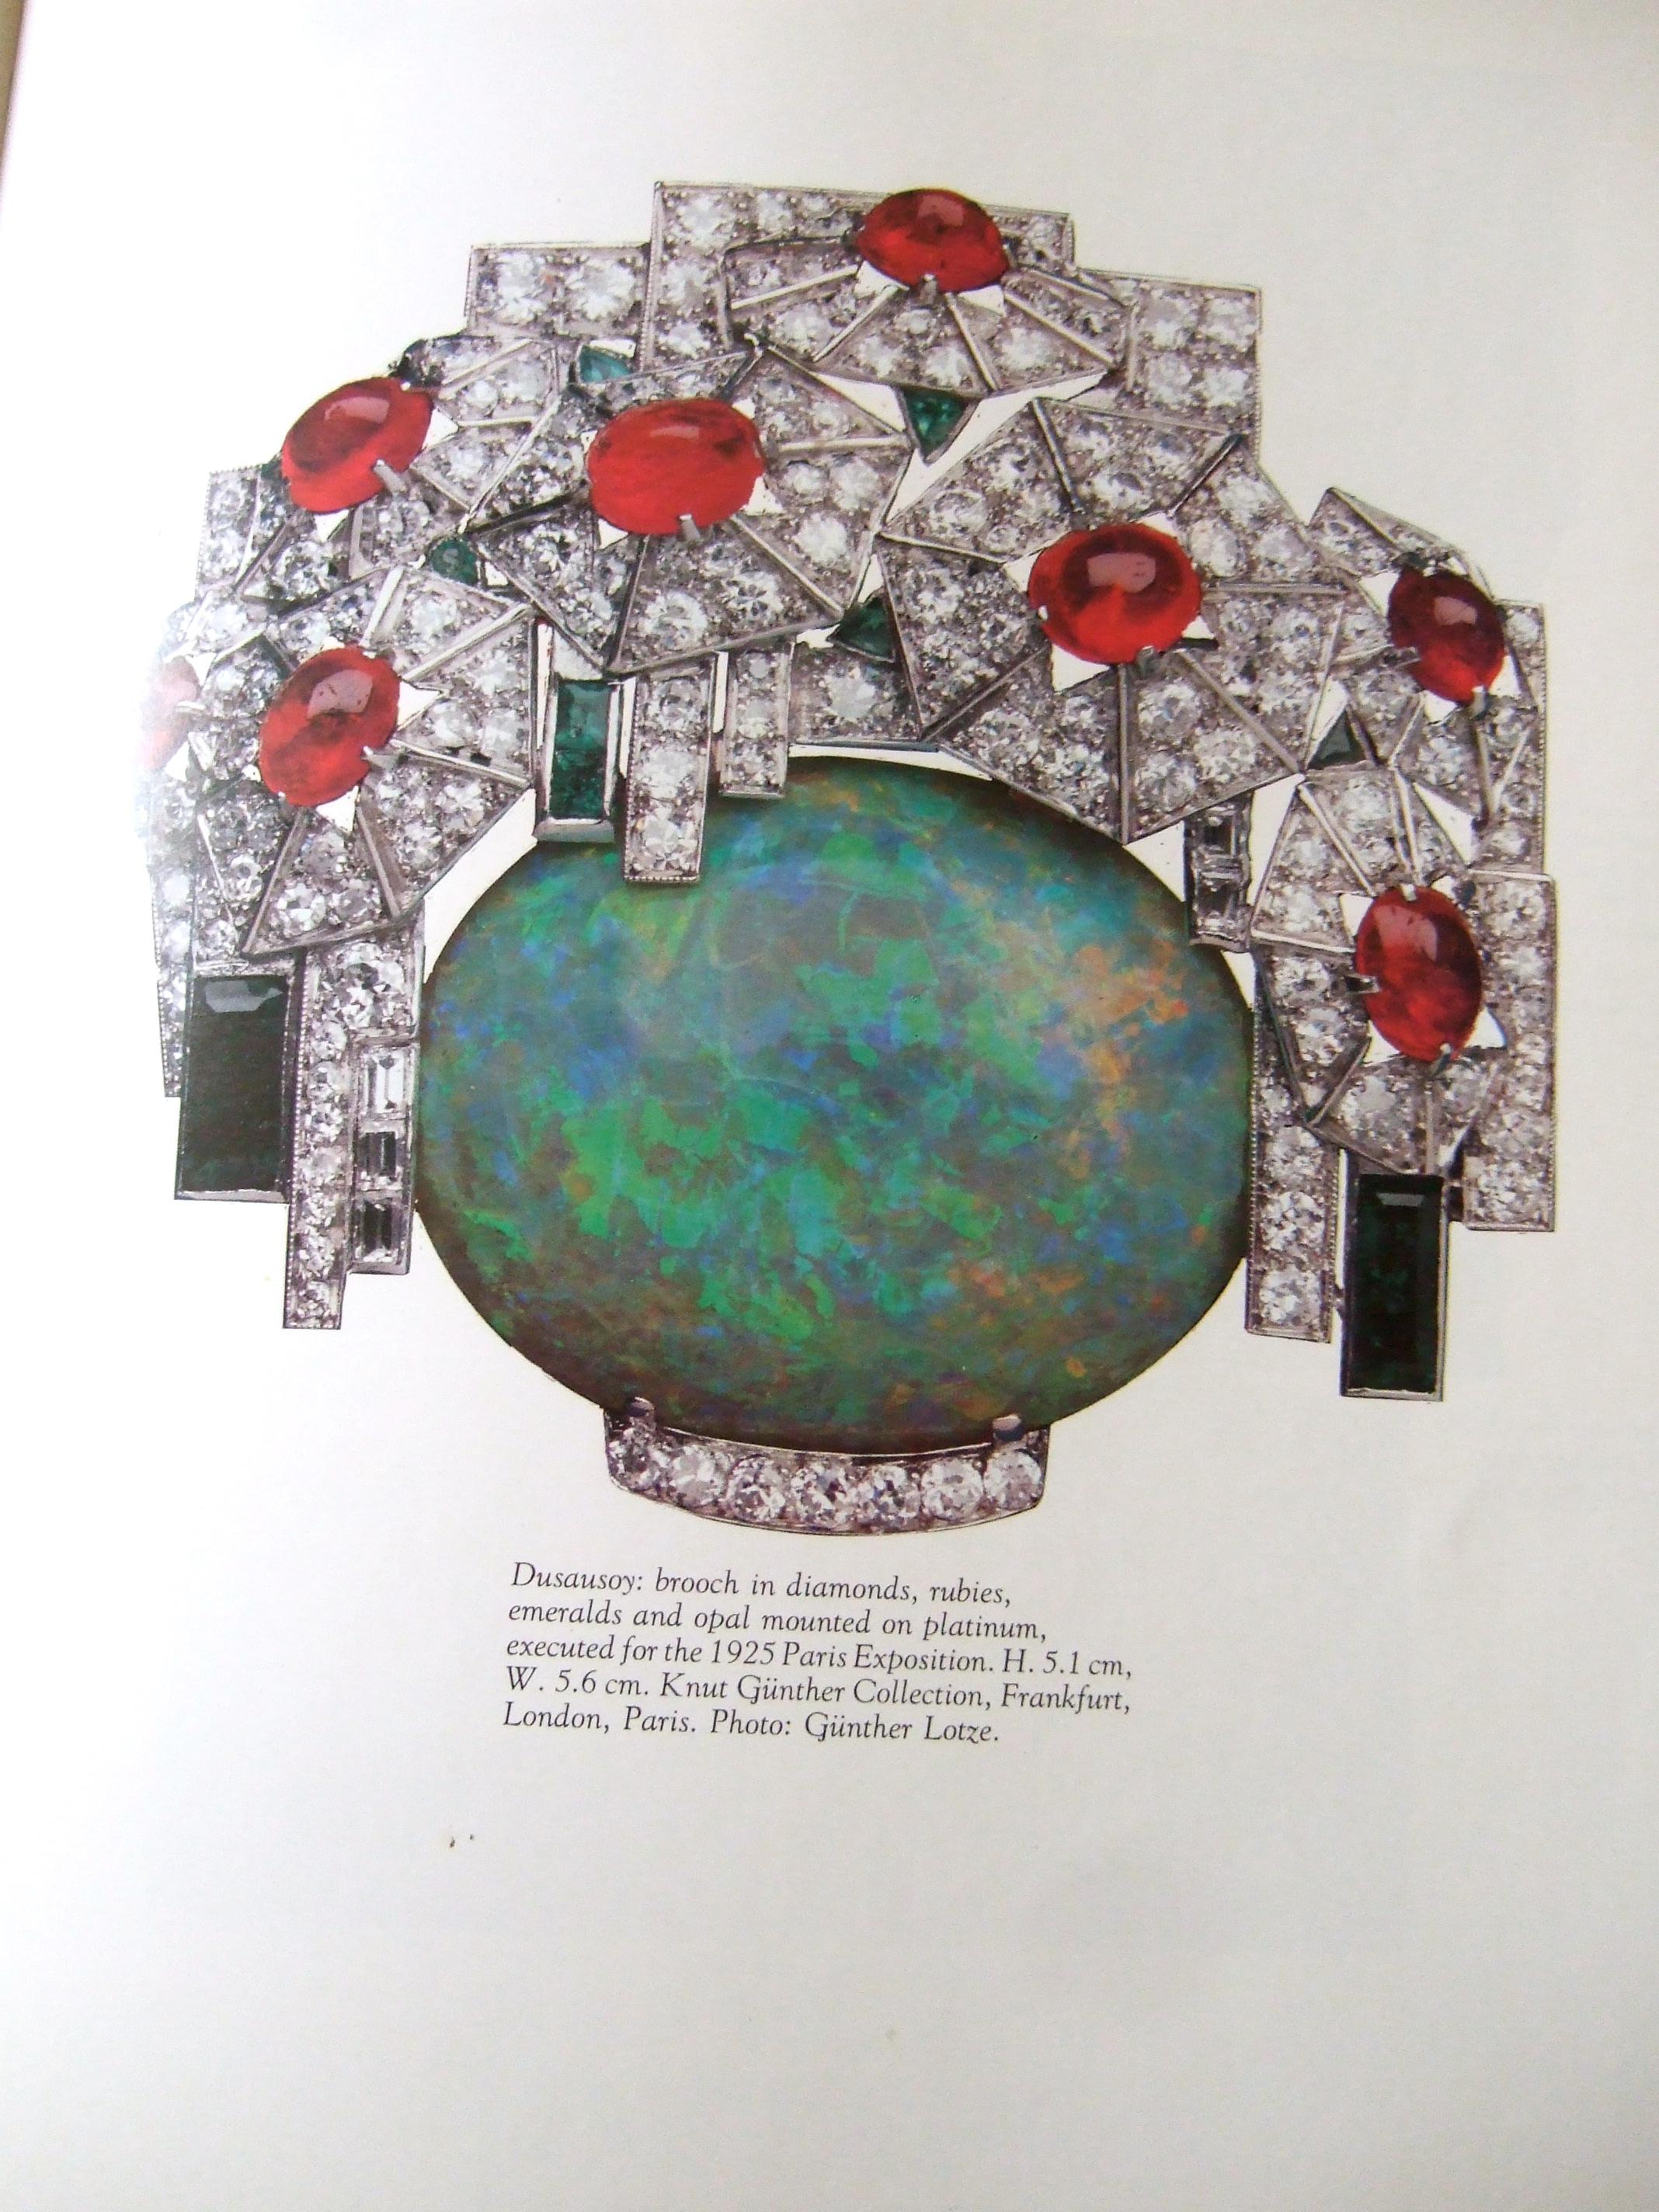 Ce livre rare à couverture rigide et à grande échelle, publié par Rizzoli, est une archive extraordinaire de bijoux et d'accessoires Art déco du 20th Century. 
Ce livre de 329 pages présente d'exquises créations Art déco des plus grandes maisons de